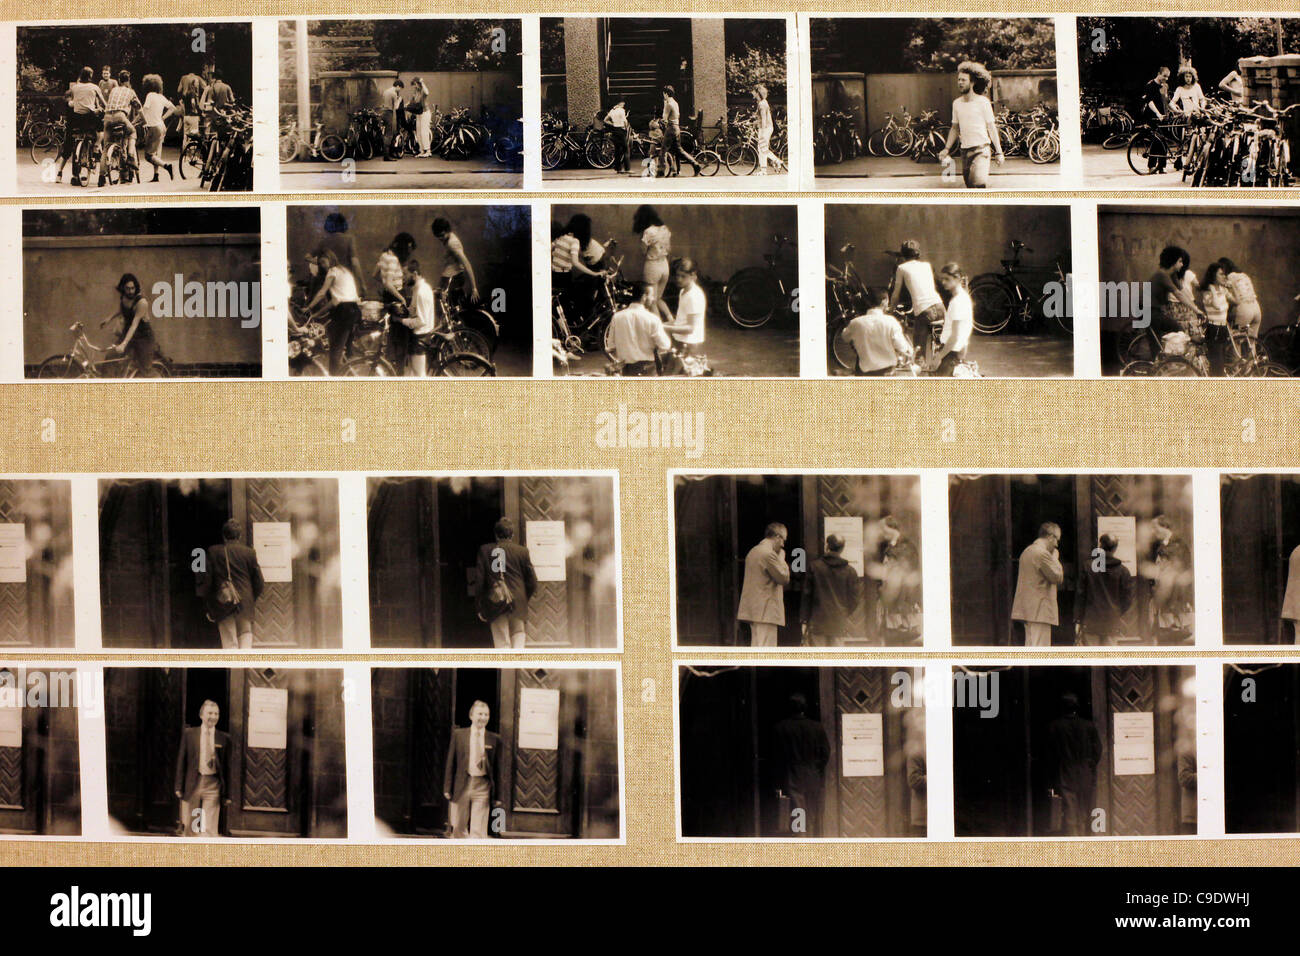 Spy fotografías exhibidas en der Runden Ecke Museo El ex Stasi sede en Leipzig, Alemania Oriental Foto de stock